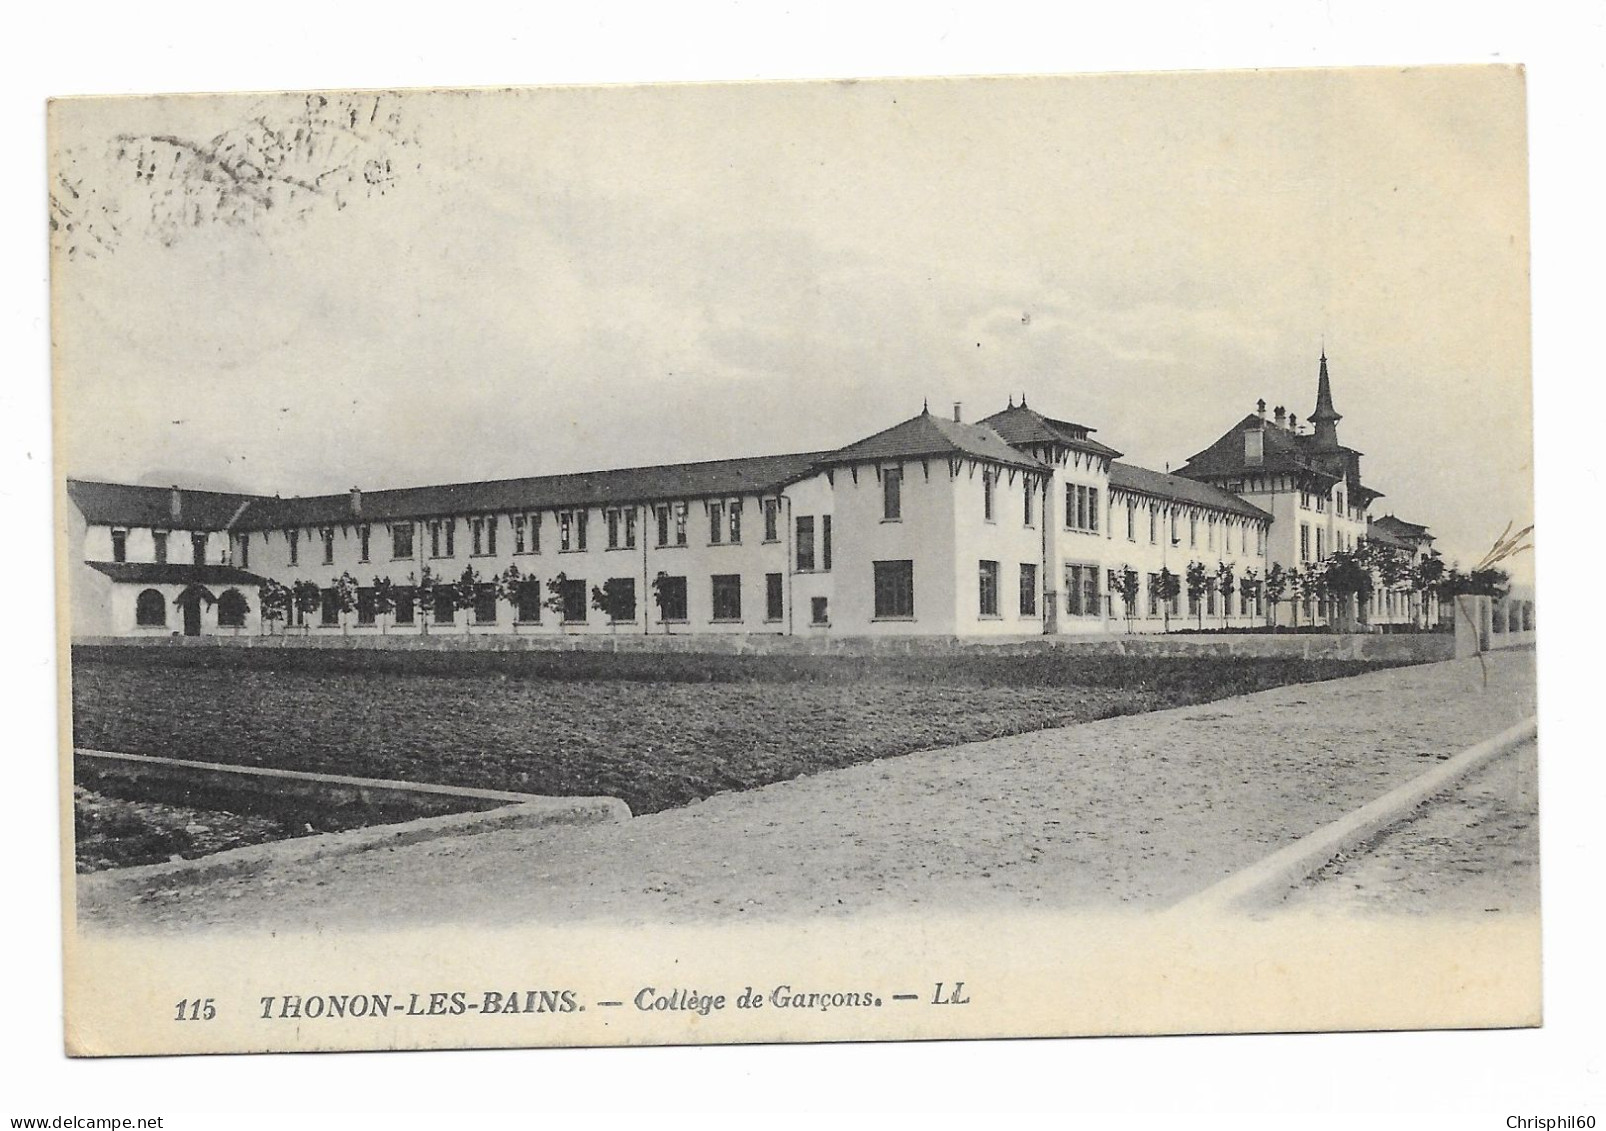 CPA Circulée En 1927 - THONON-LES-BAINS - Collège De Garçons - LL - N° 115 - - Thonon-les-Bains